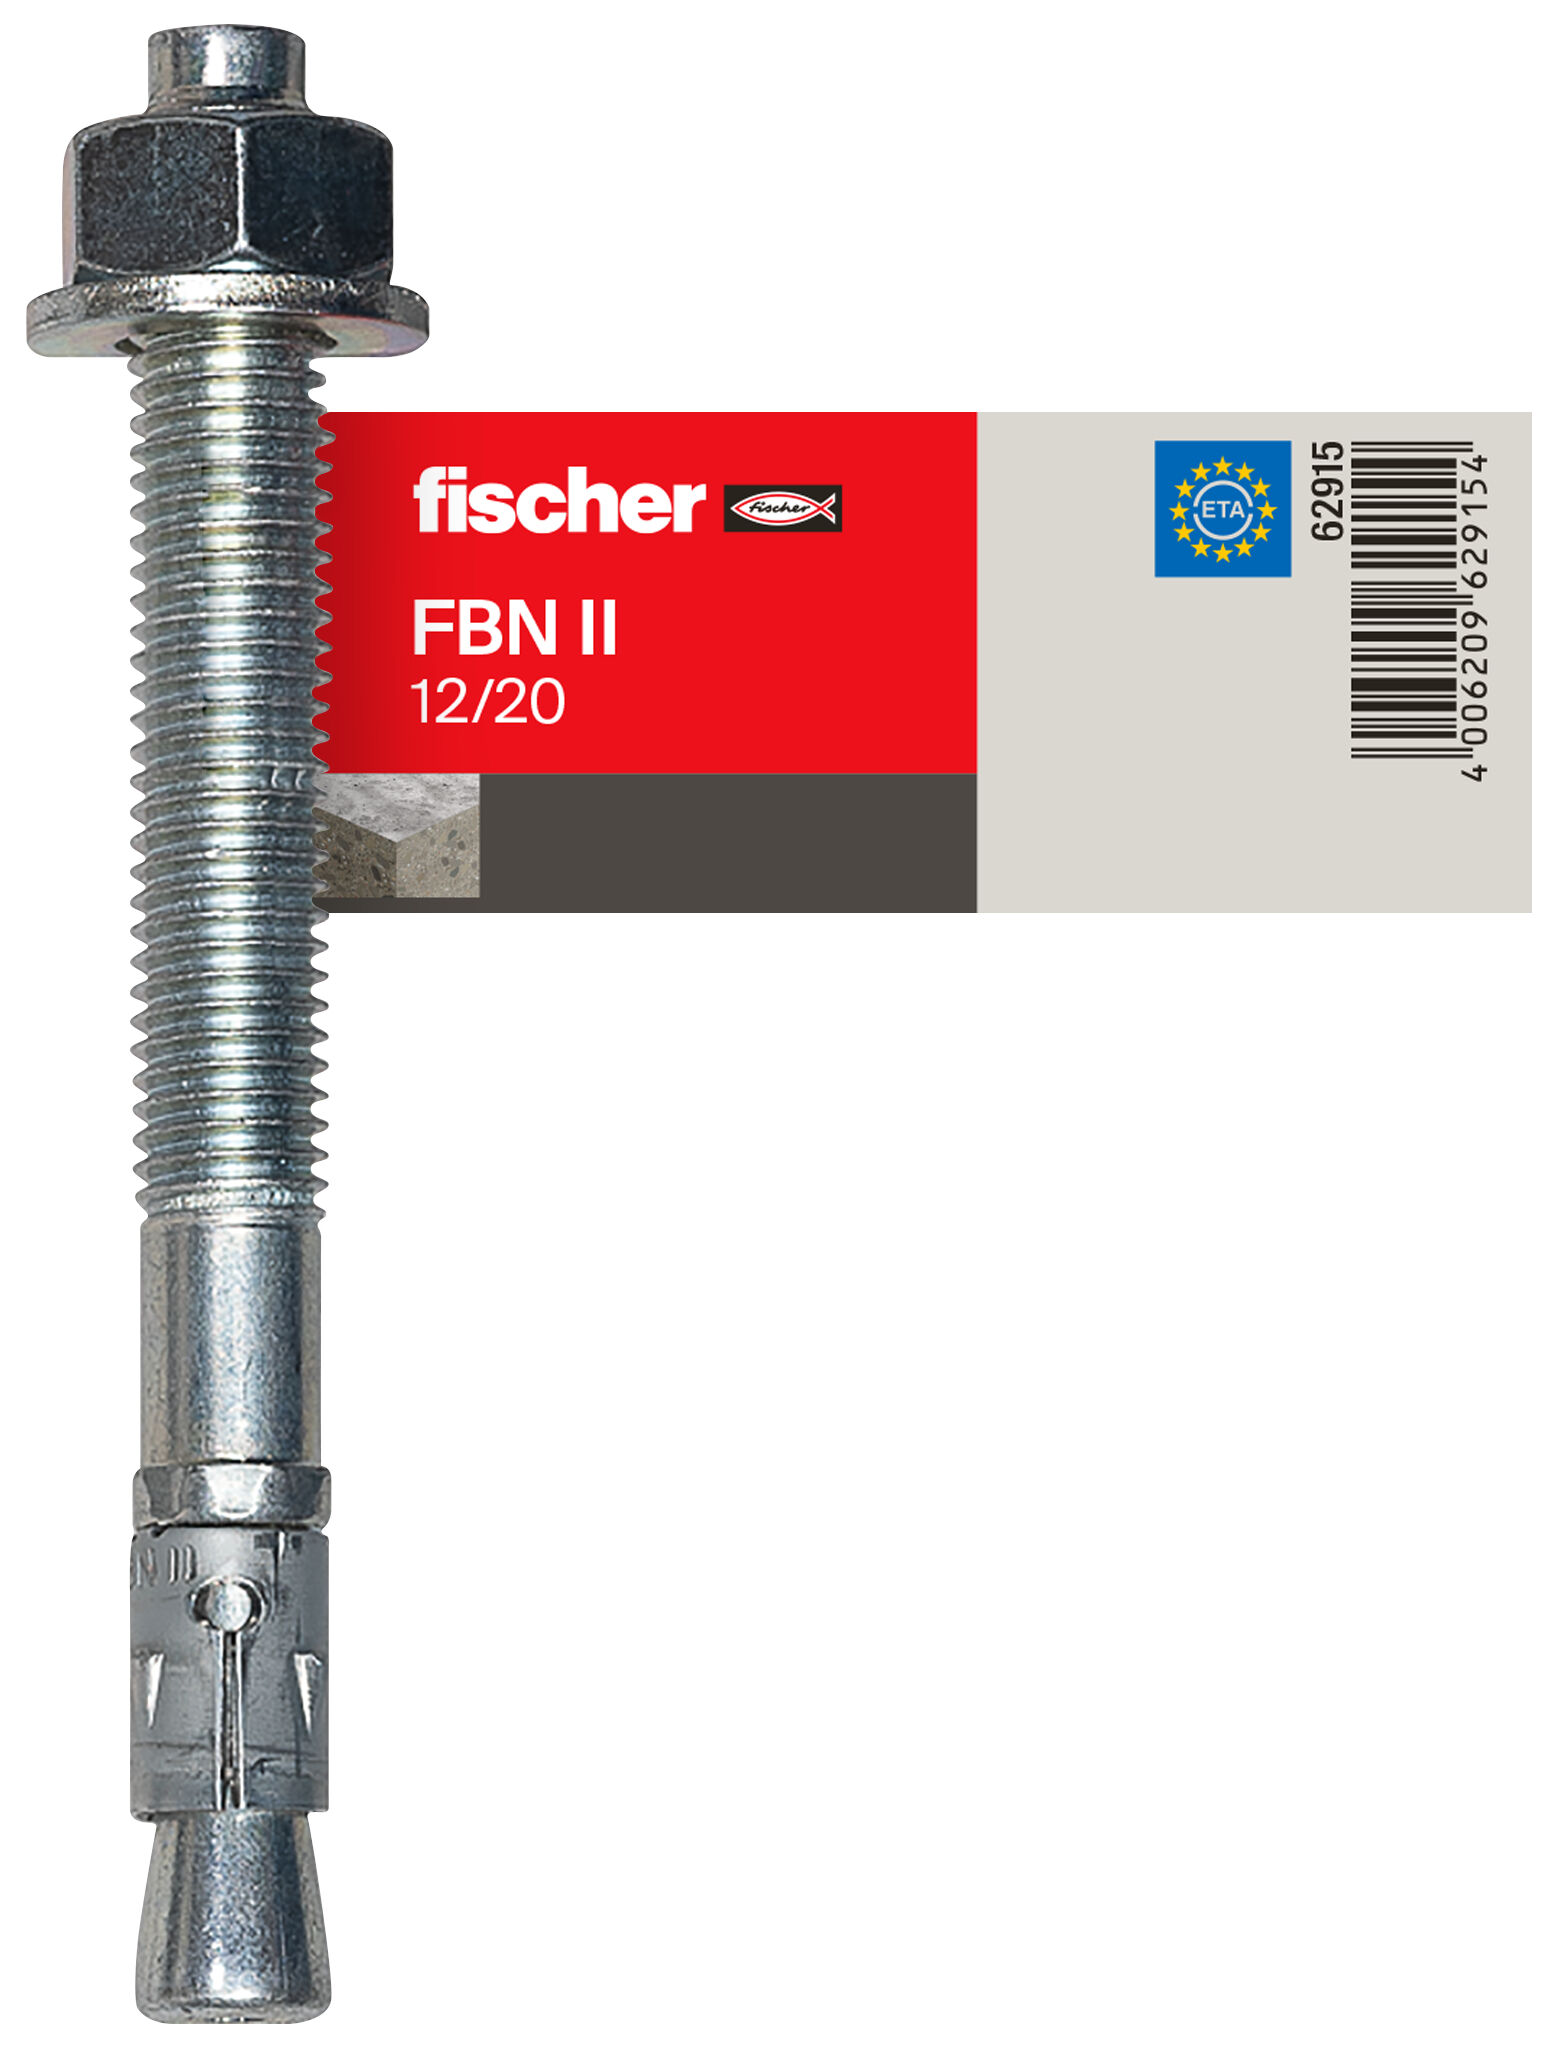 fischer bolt anchor FBN II 12/20 E item pricing